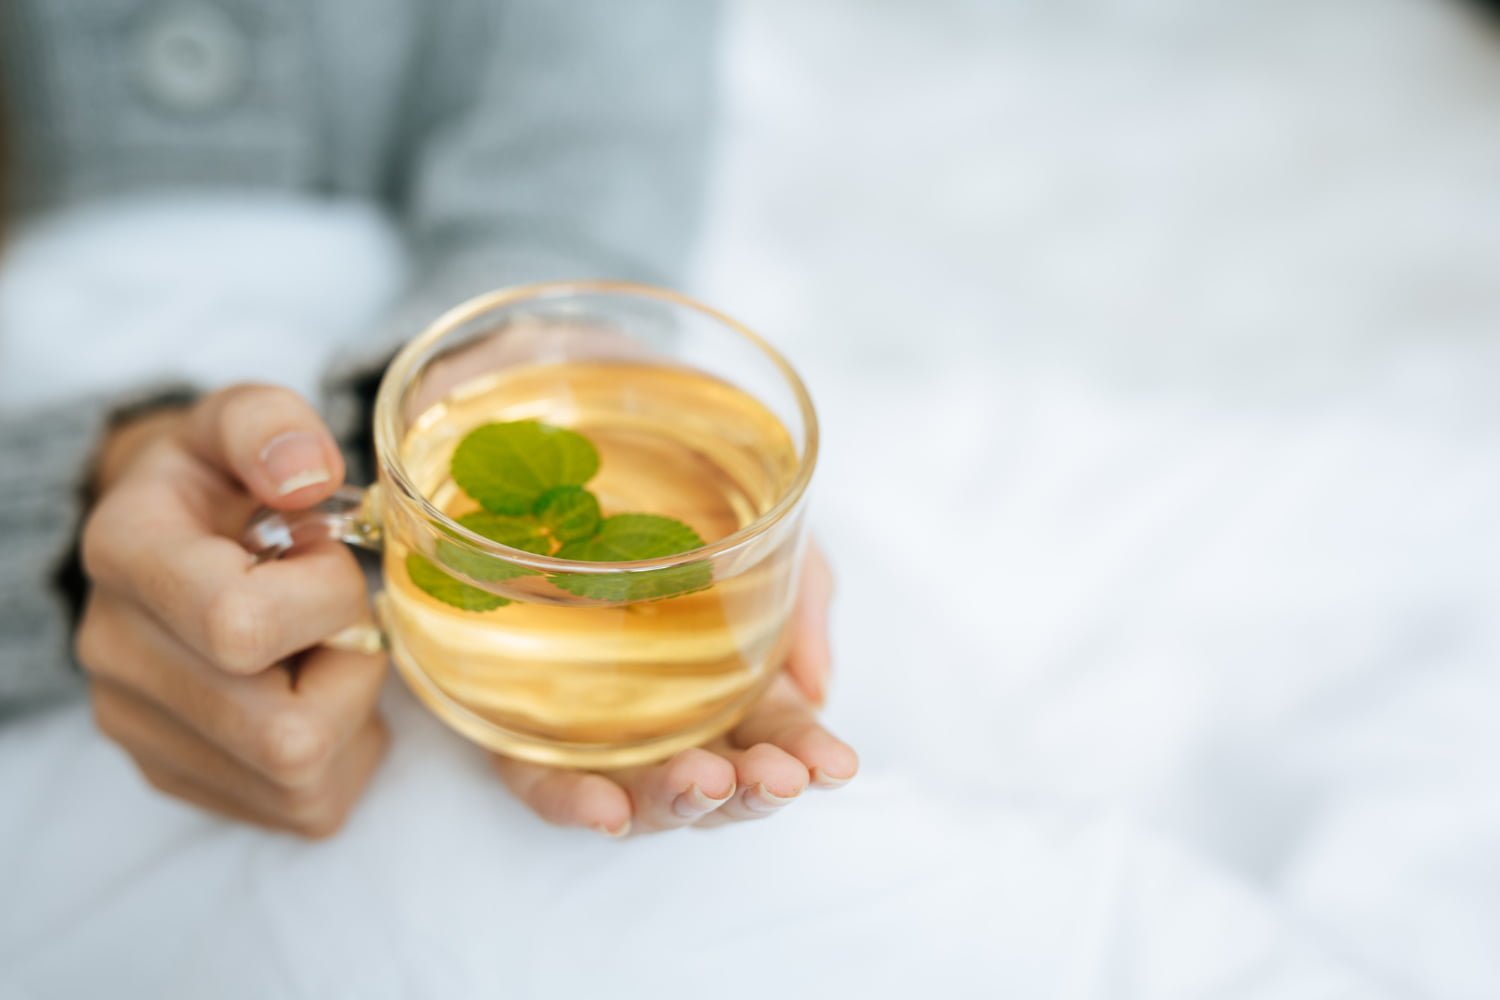 Si bebes demasiado este té de hierbas puede ser tóxico para el hígado / infusión